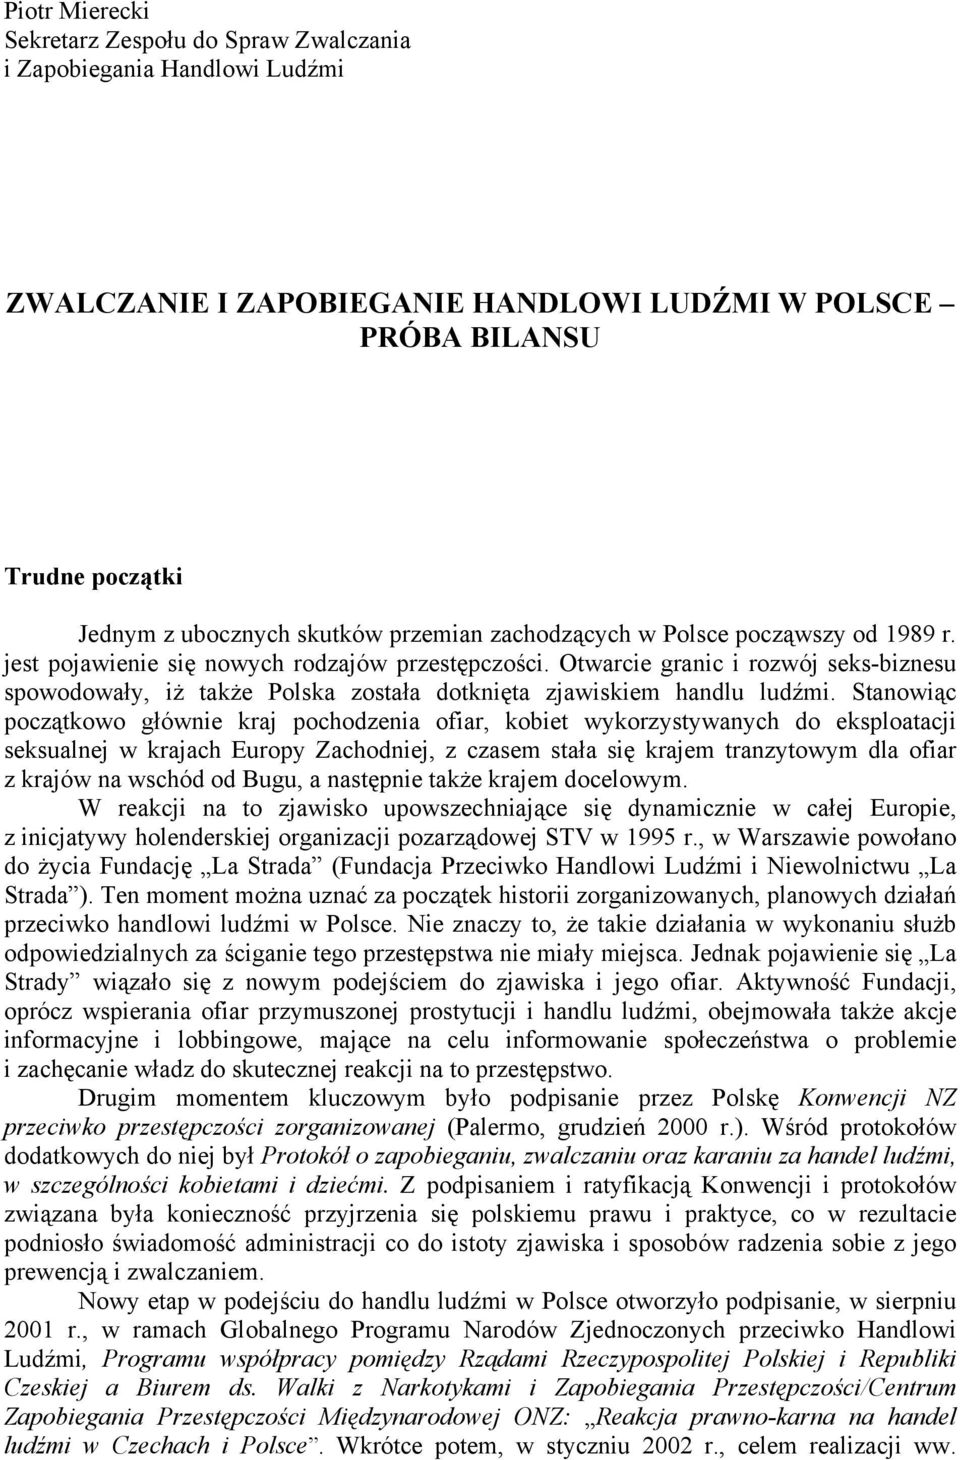 Otwarcie granic i rozwój seks-biznesu spowodowały, iż także Polska została dotknięta zjawiskiem handlu ludźmi.